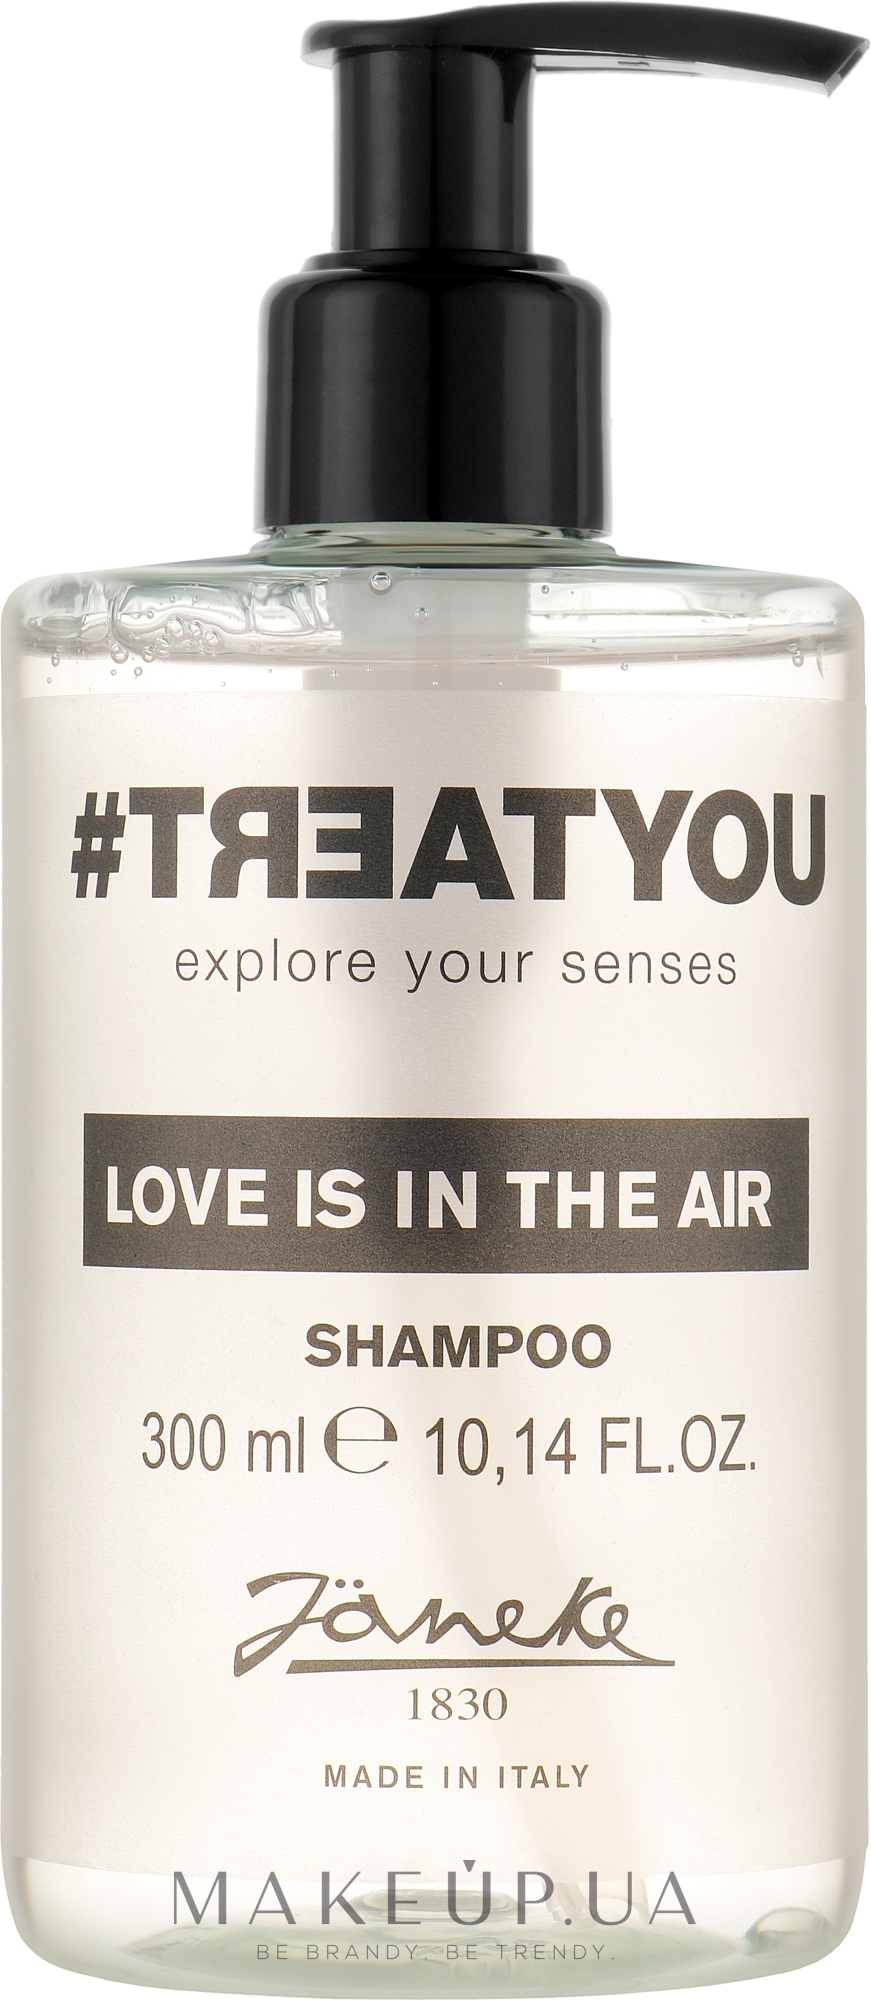 Шампунь для волос - Janeke #Treatyou Love Is In The Air Shampoo — фото 300ml